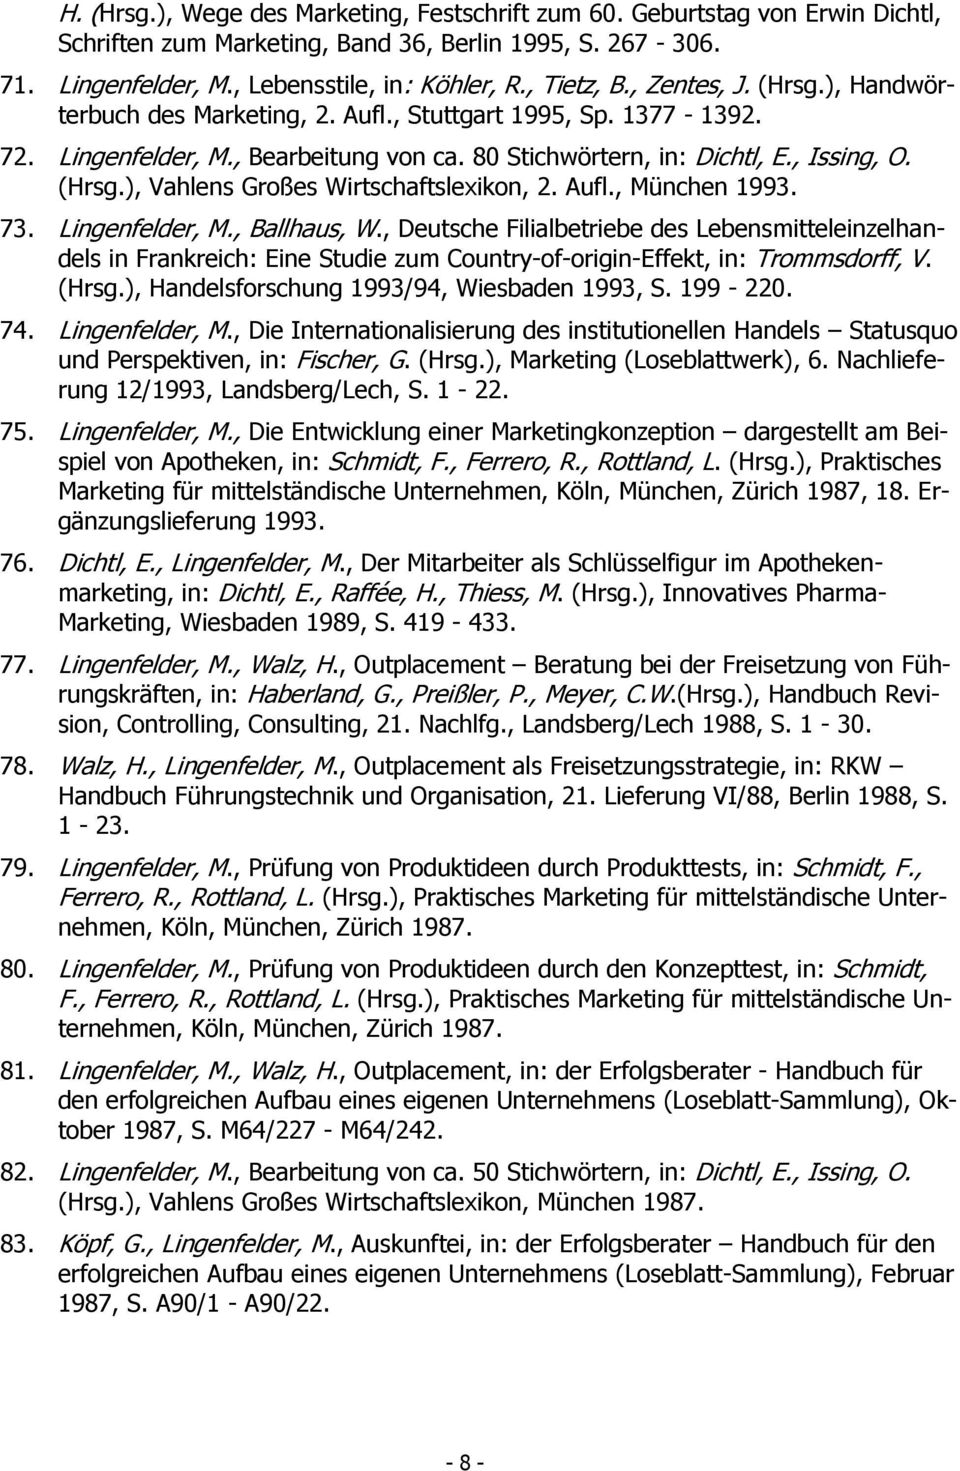 Aufl., München 1993. 73. Lingenfelder, M., Ballhaus, W., Deutsche Filialbetriebe des Lebensmitteleinzelhandels in Frankreich: Eine Studie zum Country-of-origin-Effekt, in: Trommsdorff, V. (Hrsg.